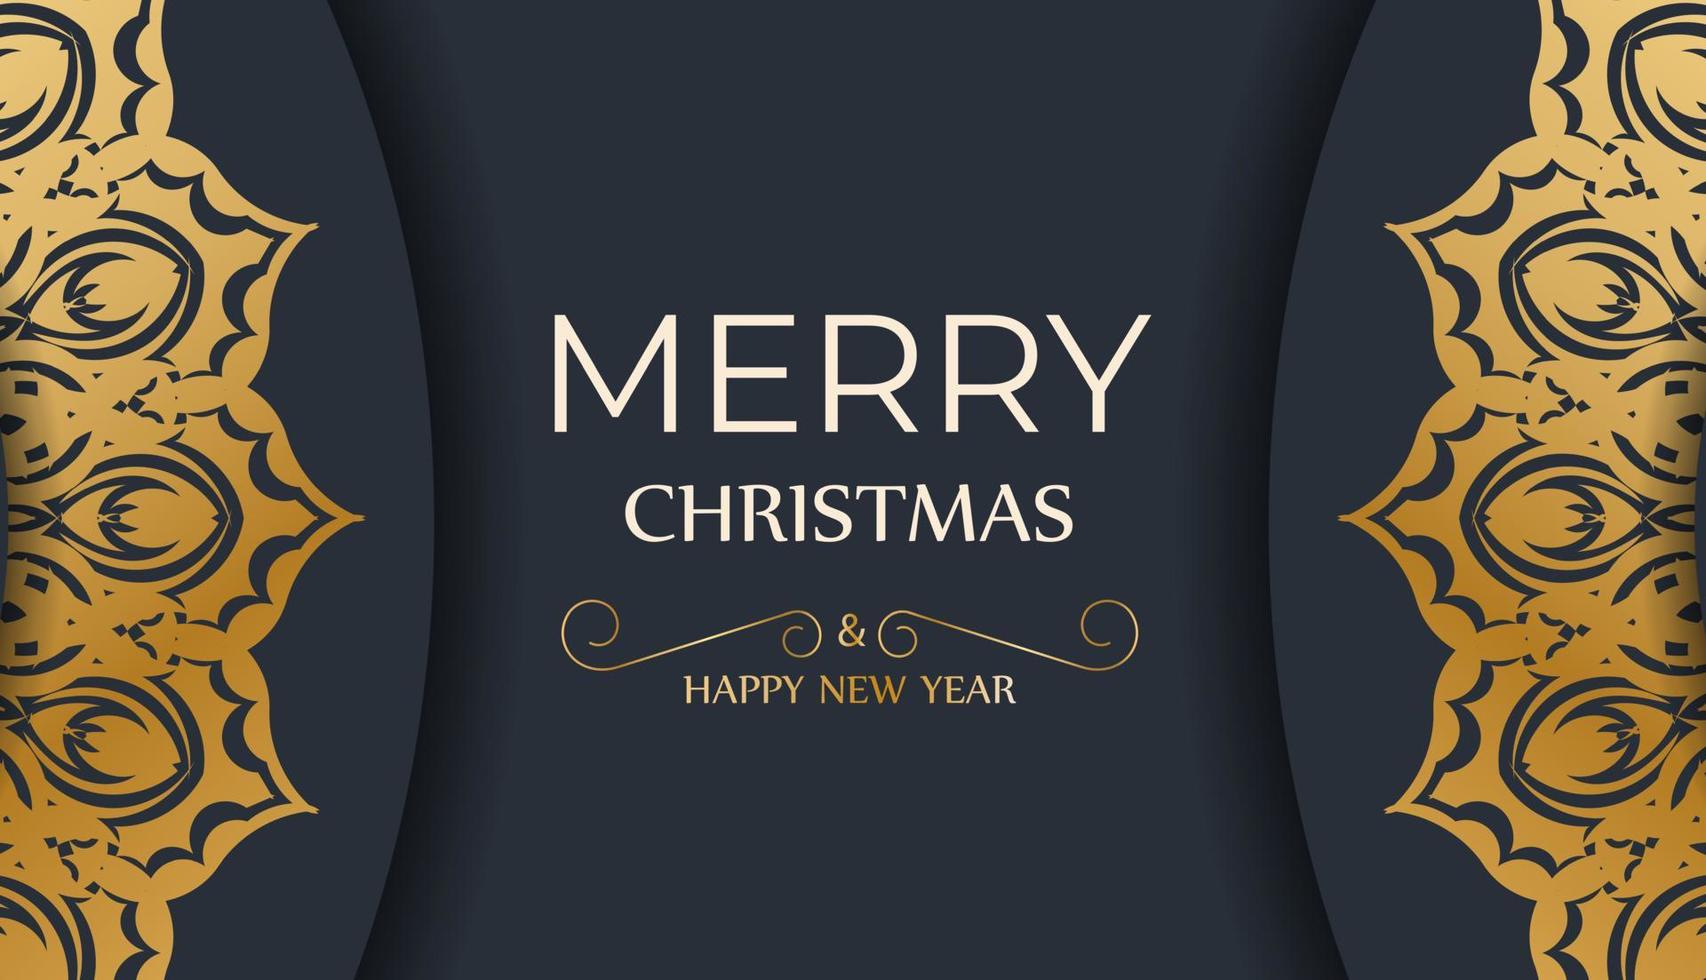 plantilla de tarjeta de felicitación de feliz navidad y feliz año nuevo en color azul oscuro con patrón de oro de invierno vector